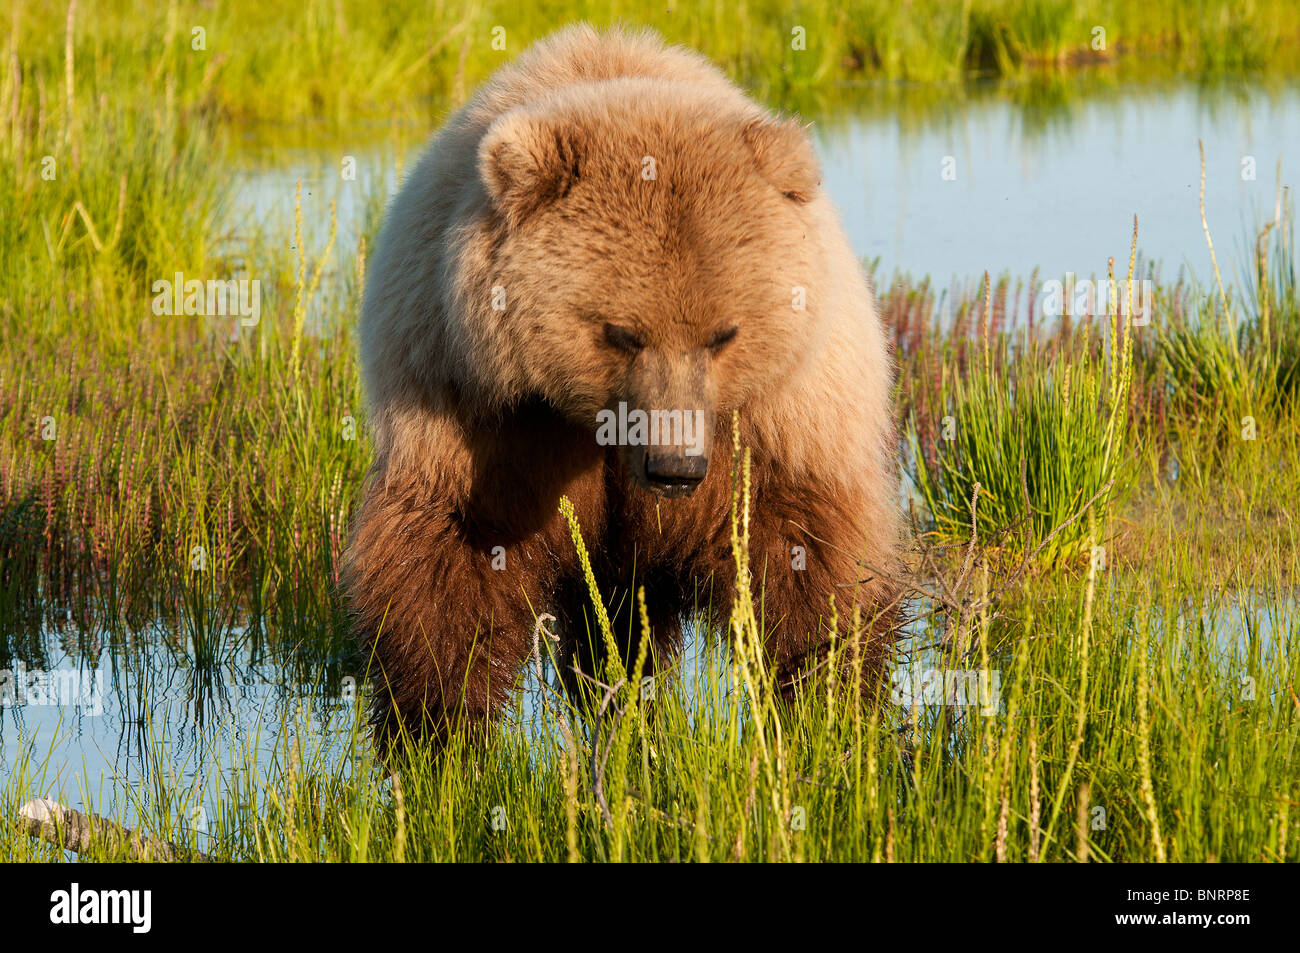 Stock photo closeup immagine di un alaskan coastal orso bruno in un prato nella luce dorata del tramonto Foto Stock